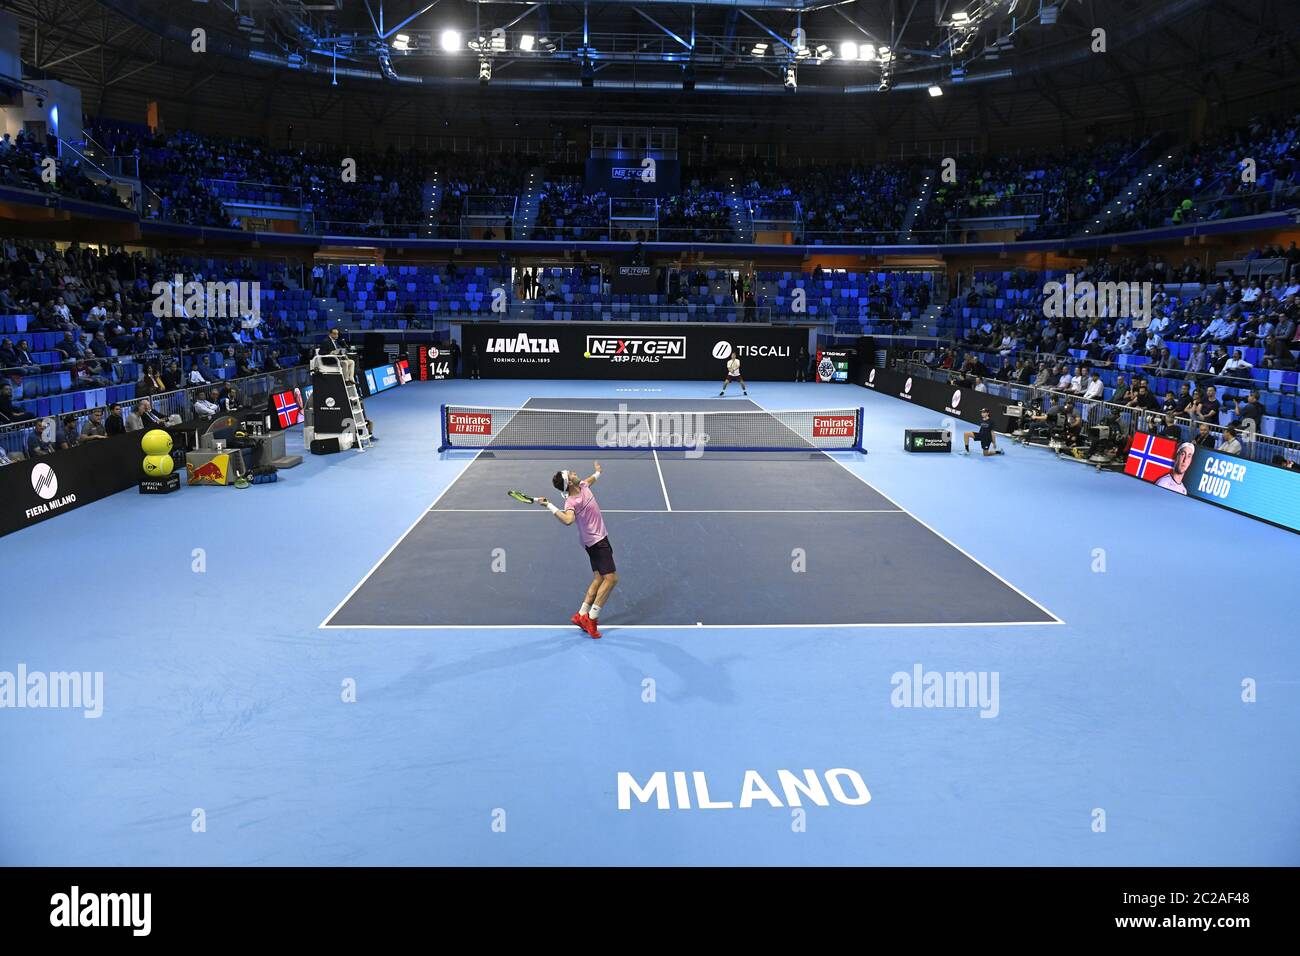 Pista de tenis cubierta, durante un partido de tenis de las finales de la próxima generación ATP, en Milán. Foto de stock